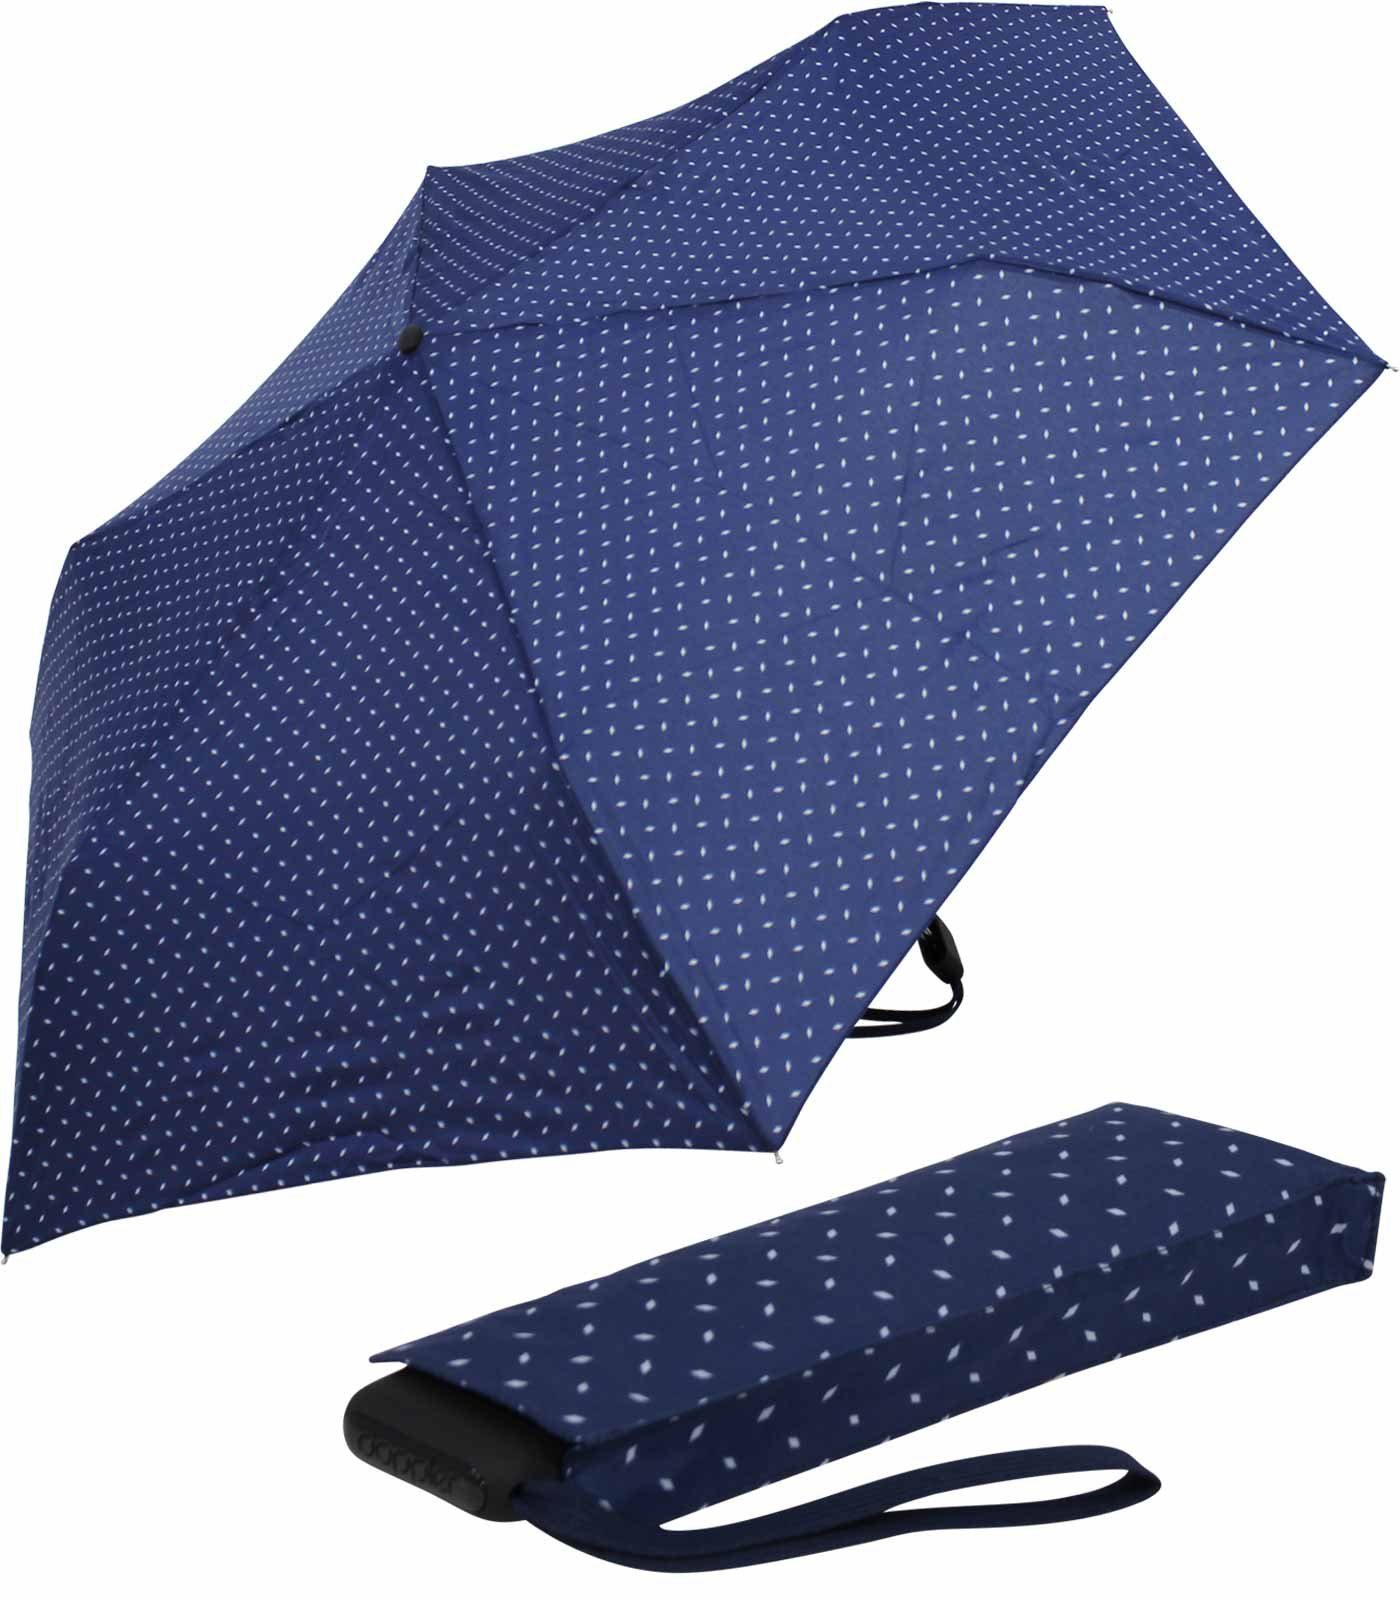 doppler® Taschenregenschirm ein leichter und flacher Schirm für jede Tasche, dieser treue Begleiter findet überall Platz blau